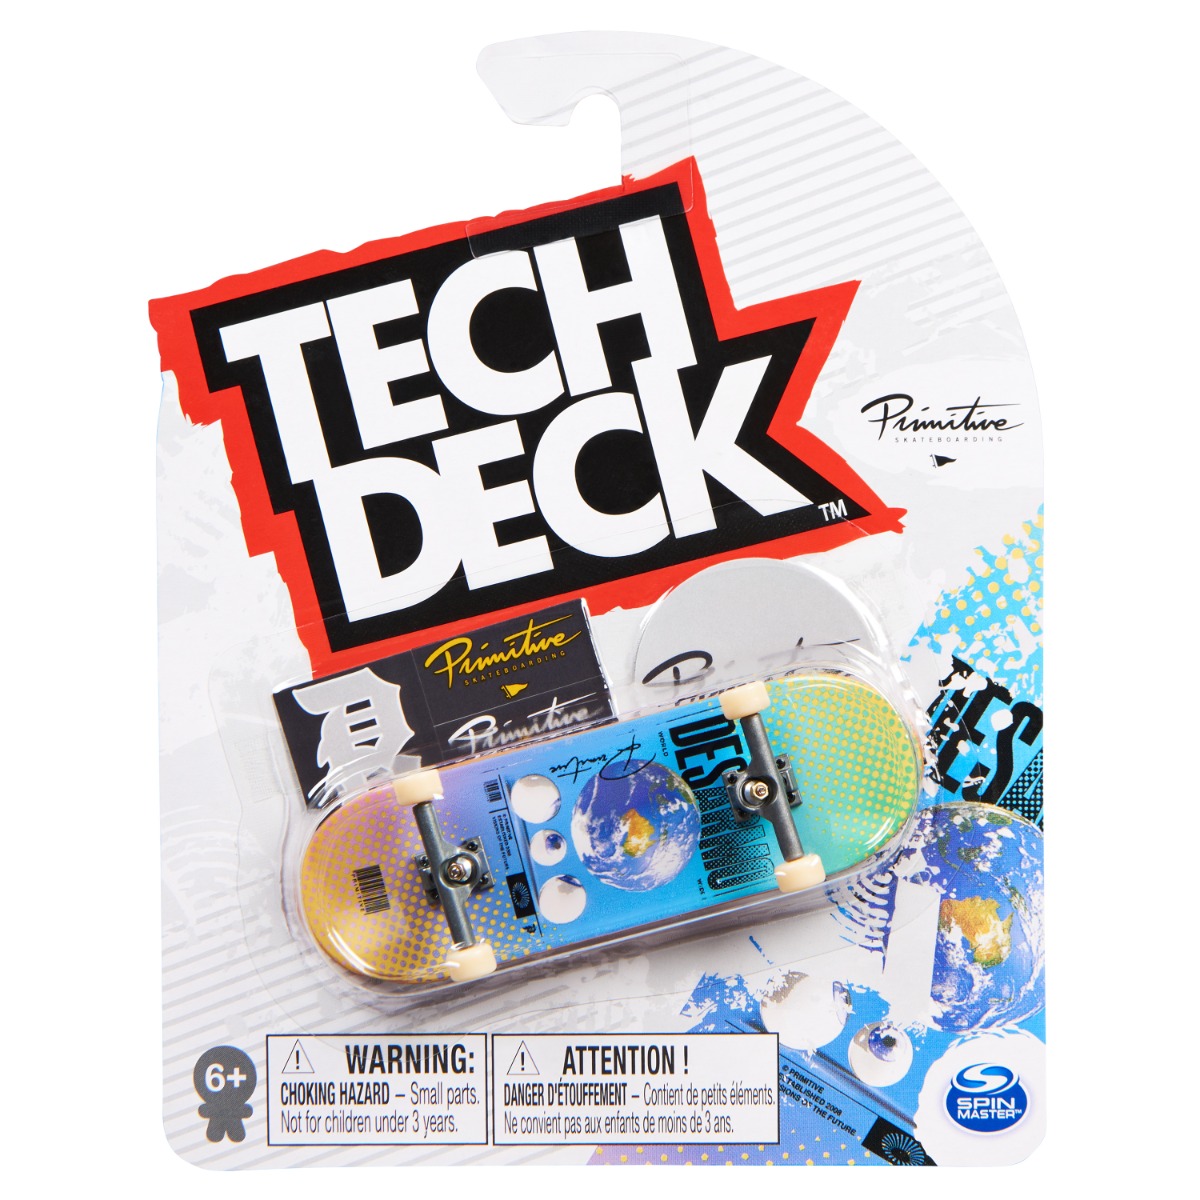 Mini placa skateboard Tech Deck, Primitive, 20141347